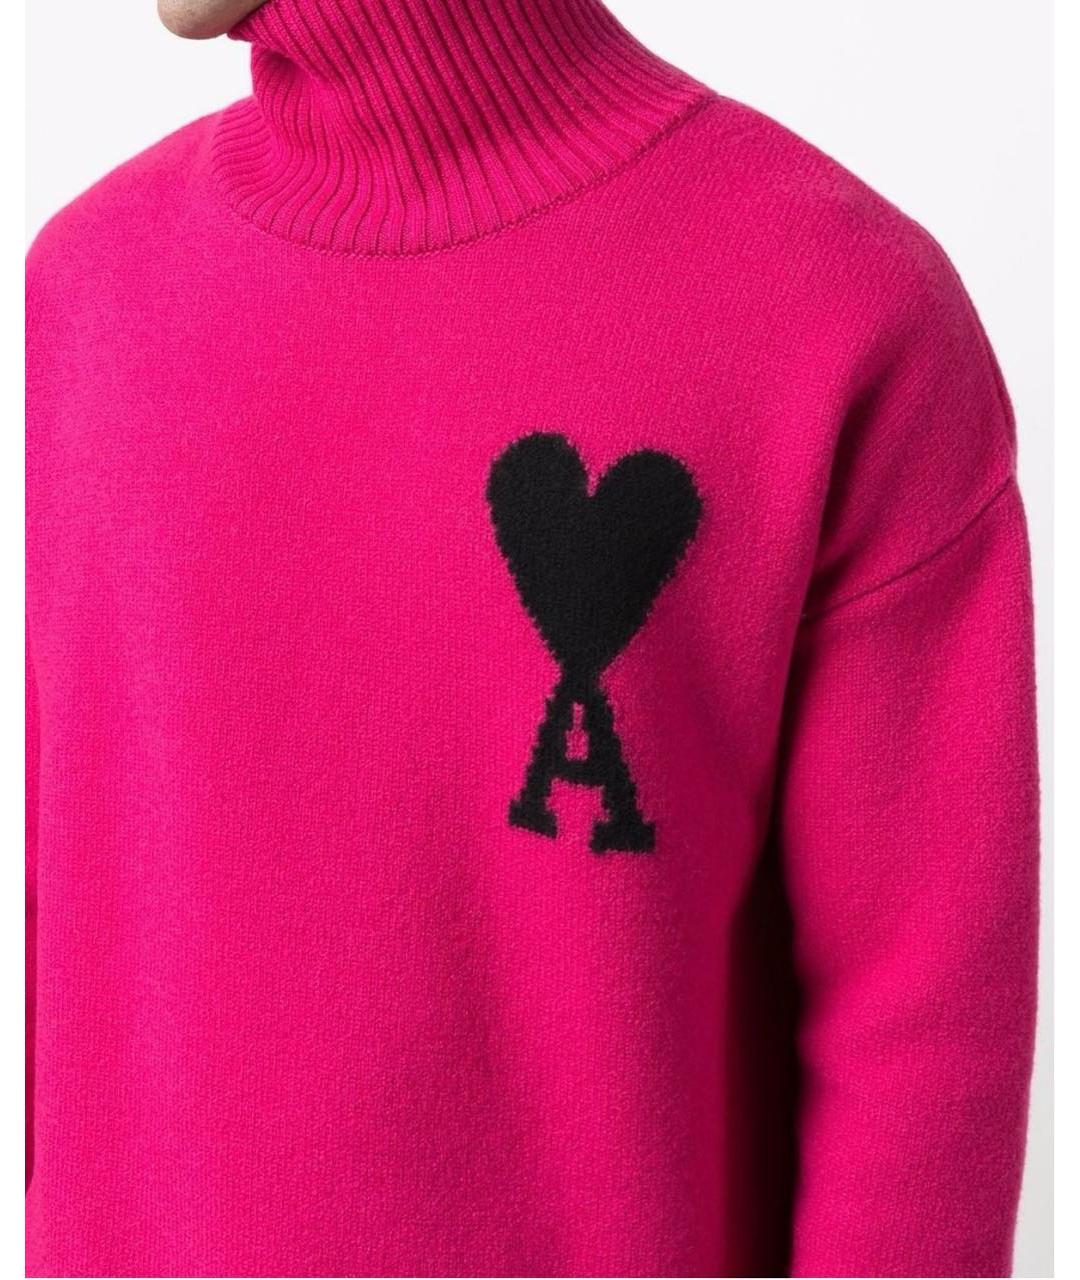 AMI ALEXANDRE MATTIUSSI Розовый шерстяной джемпер / свитер, фото 3